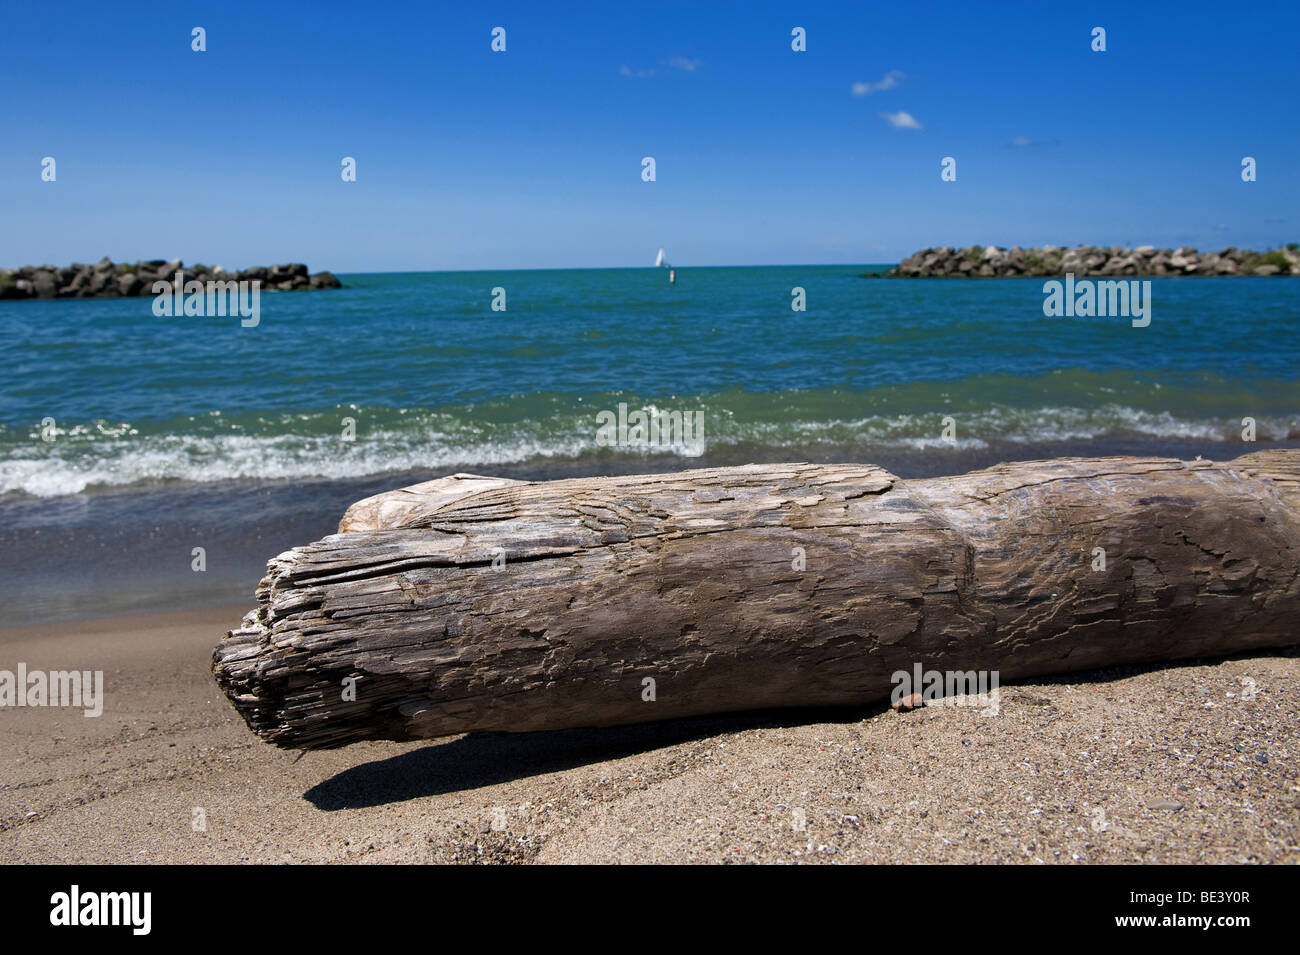 Pose de bois flotté sur la plage avec vue sur l'eau Banque D'Images